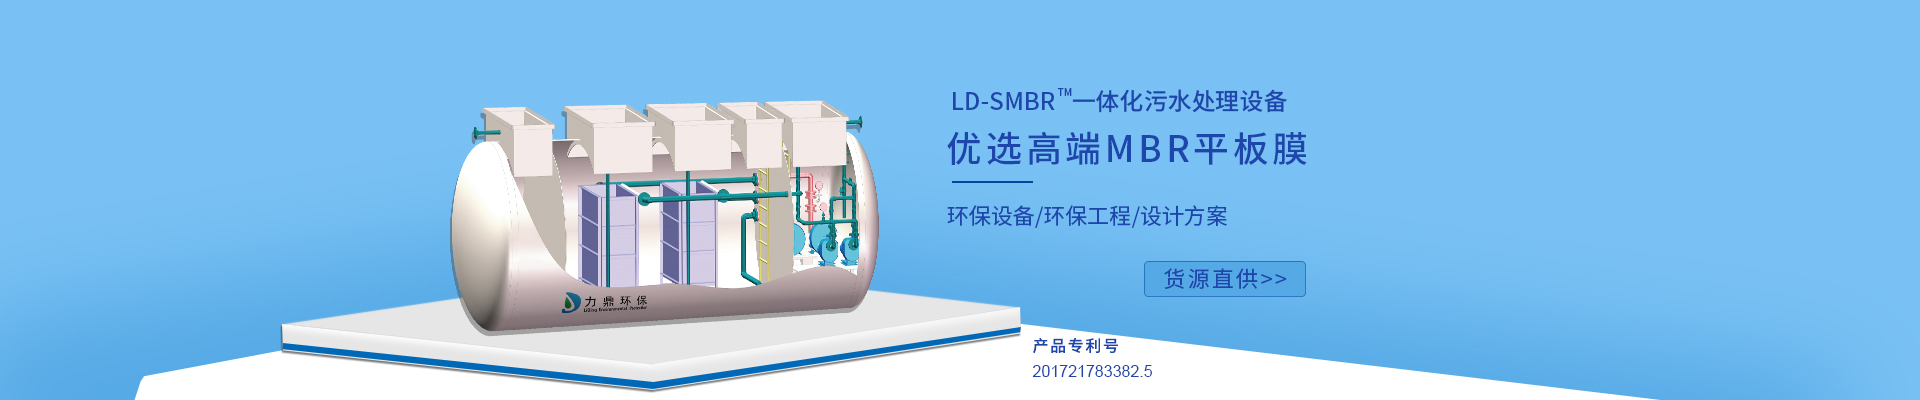 澳门银银河7163LD-SMBR污水处理设备优选MBR浸没式平板膜，广泛应用于各种高标准生活污水处理项目